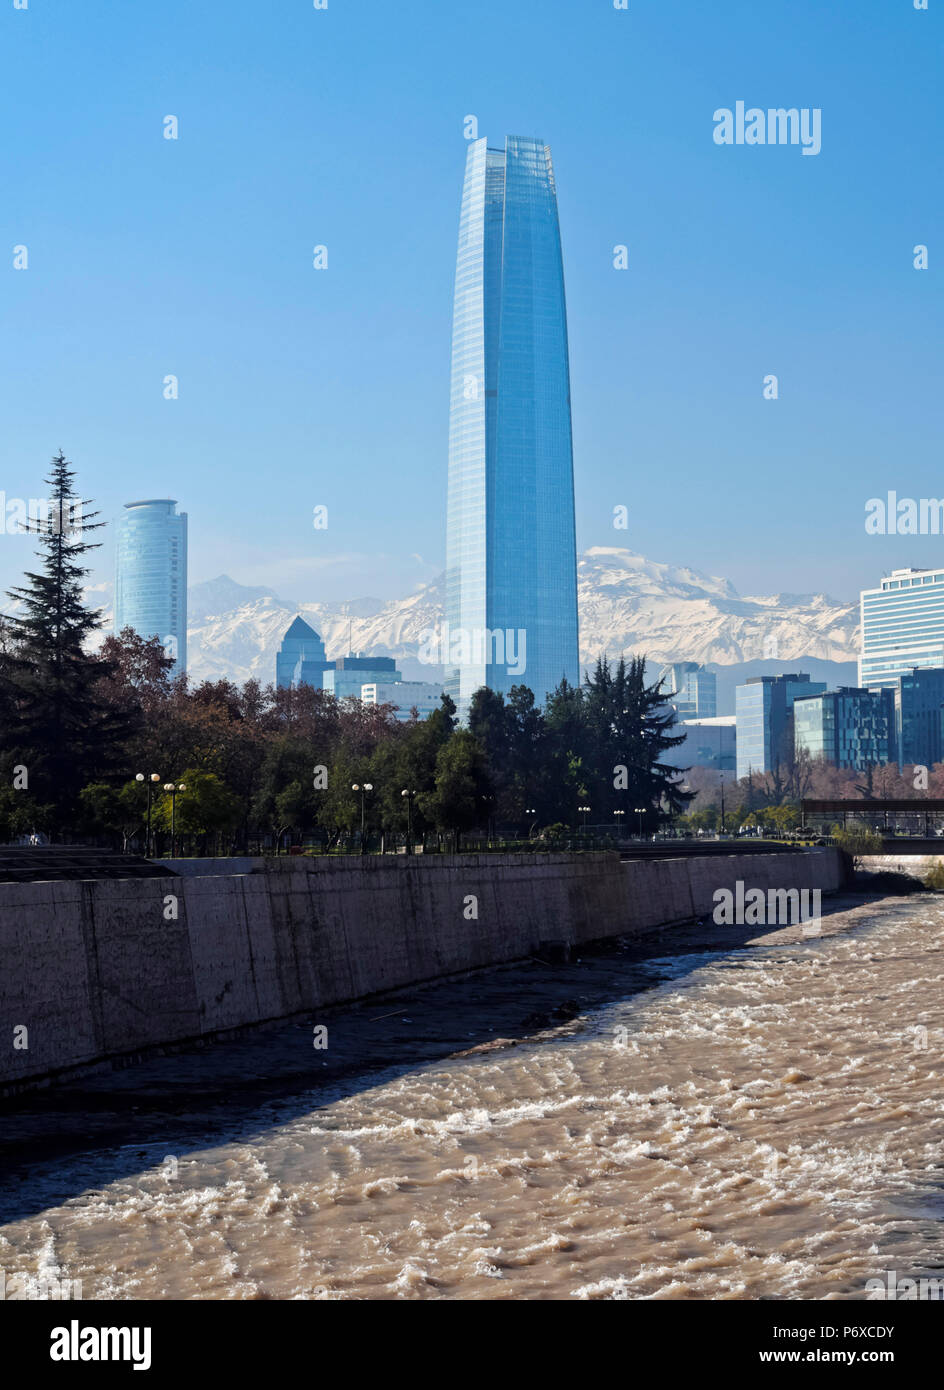 Le Chili, Santiago, Vue sur Rivière Mapocho vers le haut a soulevé les bâtiments avec Costanera Center Tower, le plus haut bâtiment de l'Amérique du Sud. Andes couvertes de neige dans l'arrière-plan. Banque D'Images